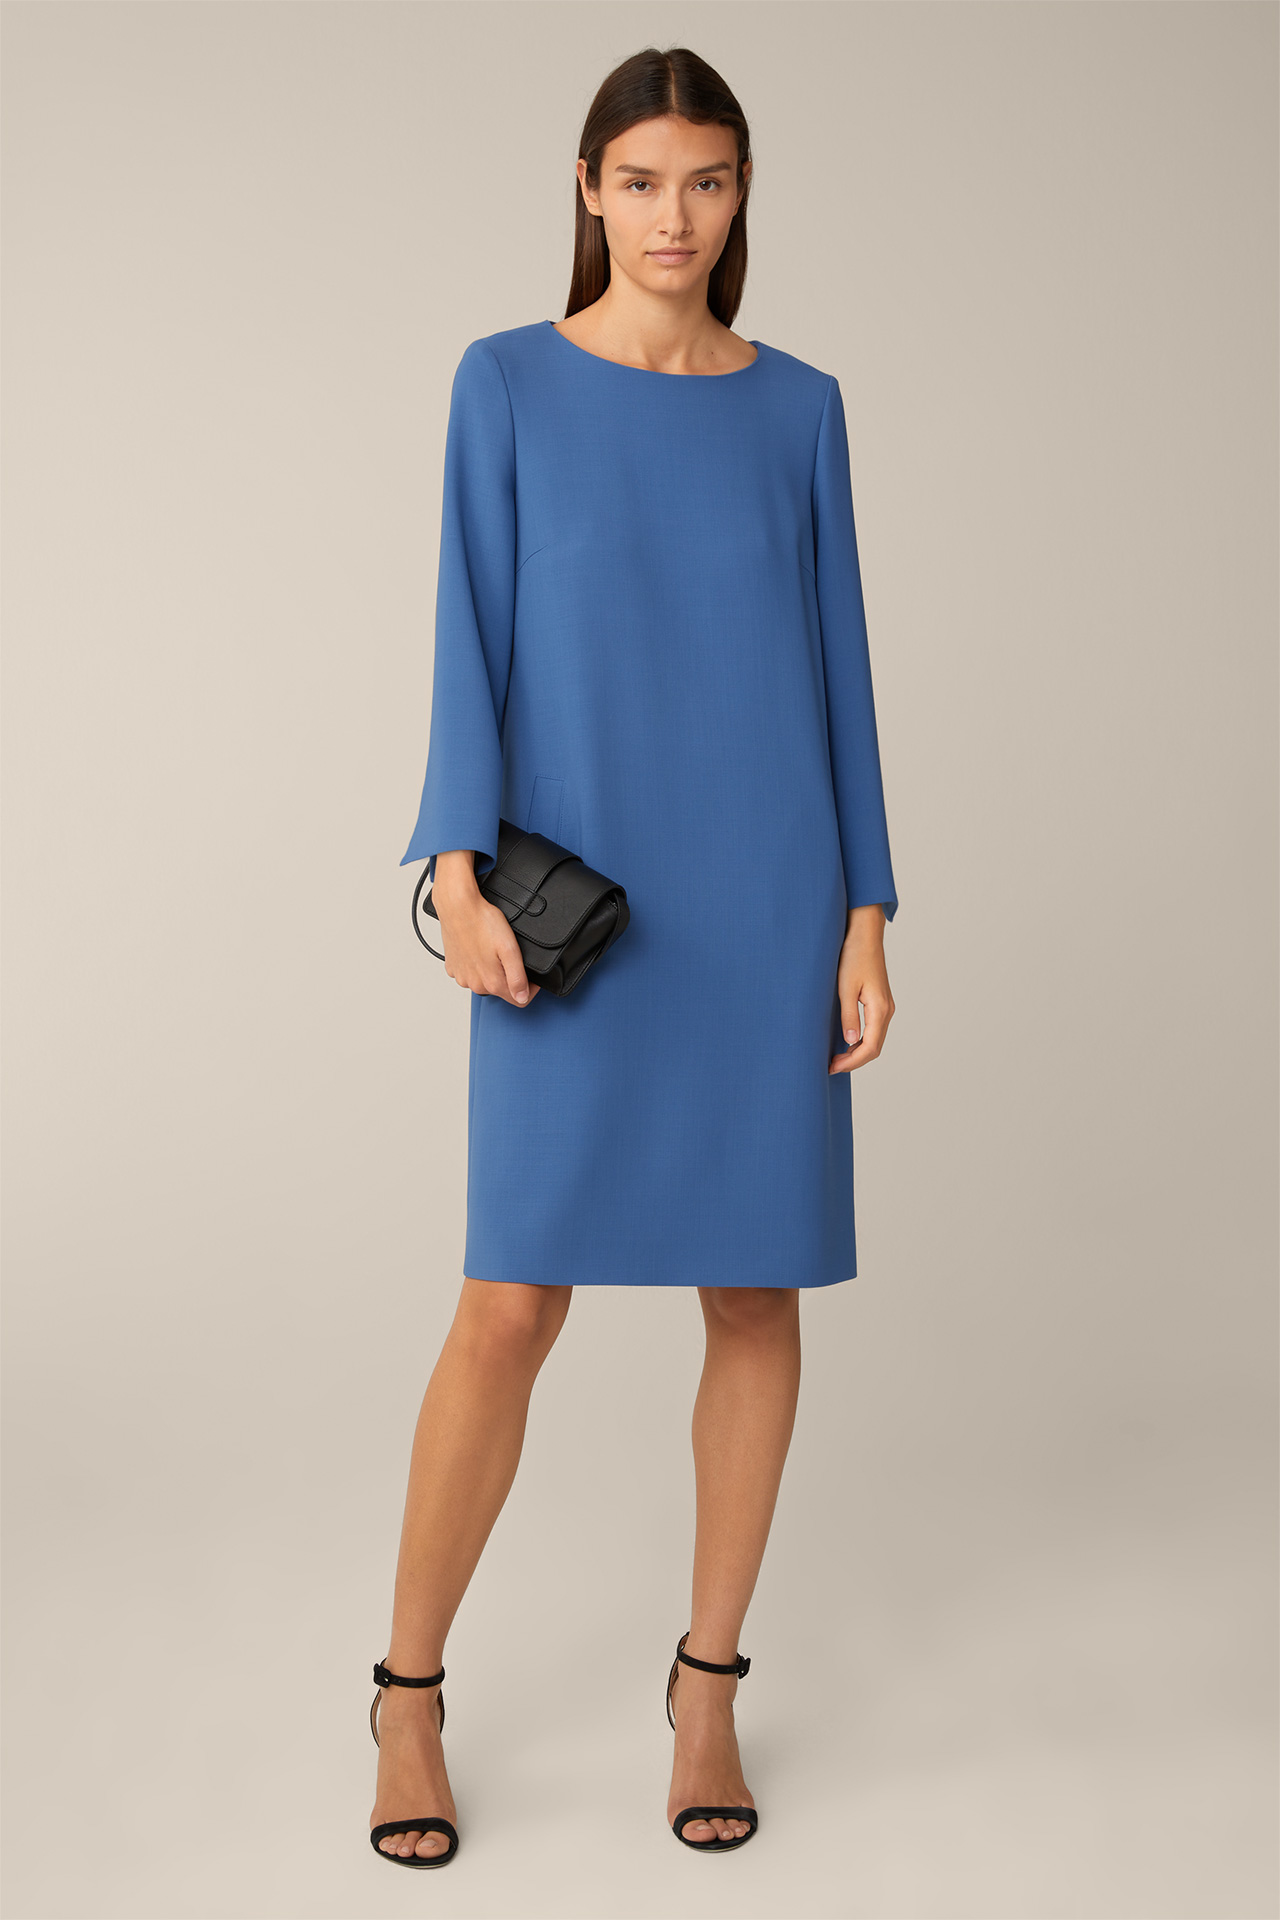 Wool Crêpe Dress in Blue